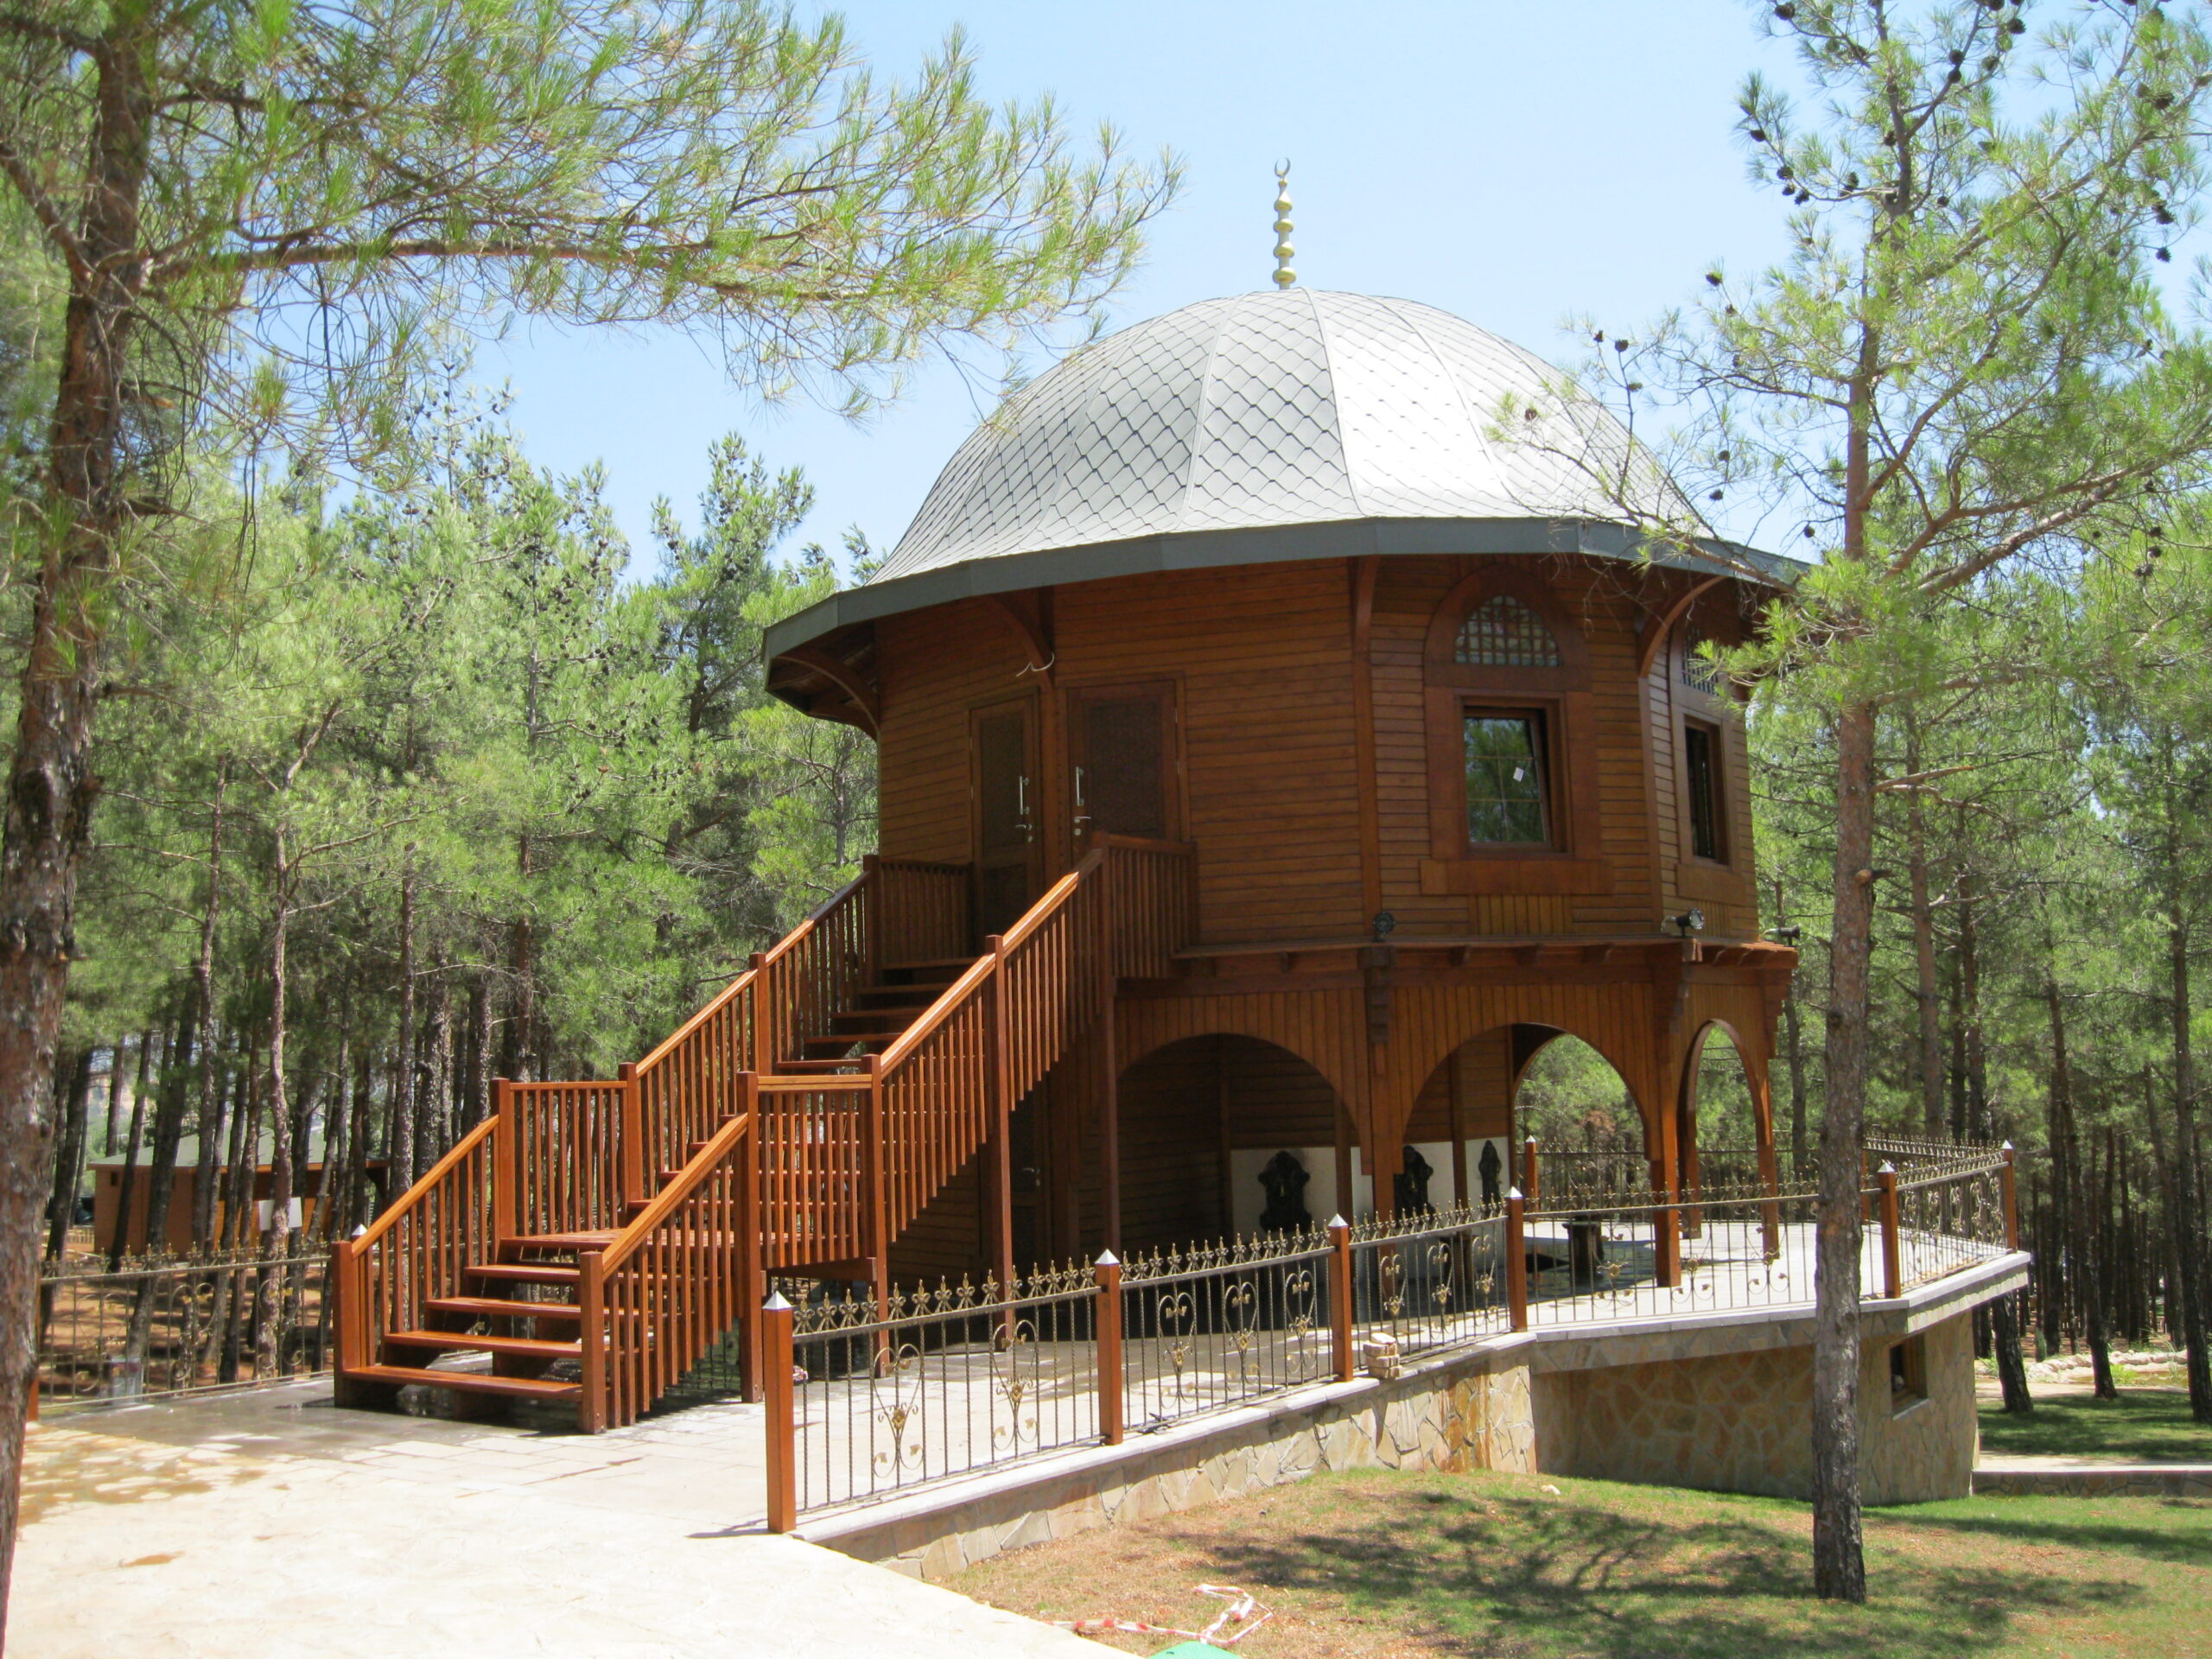 Turkuaz Park | Wooden Structure